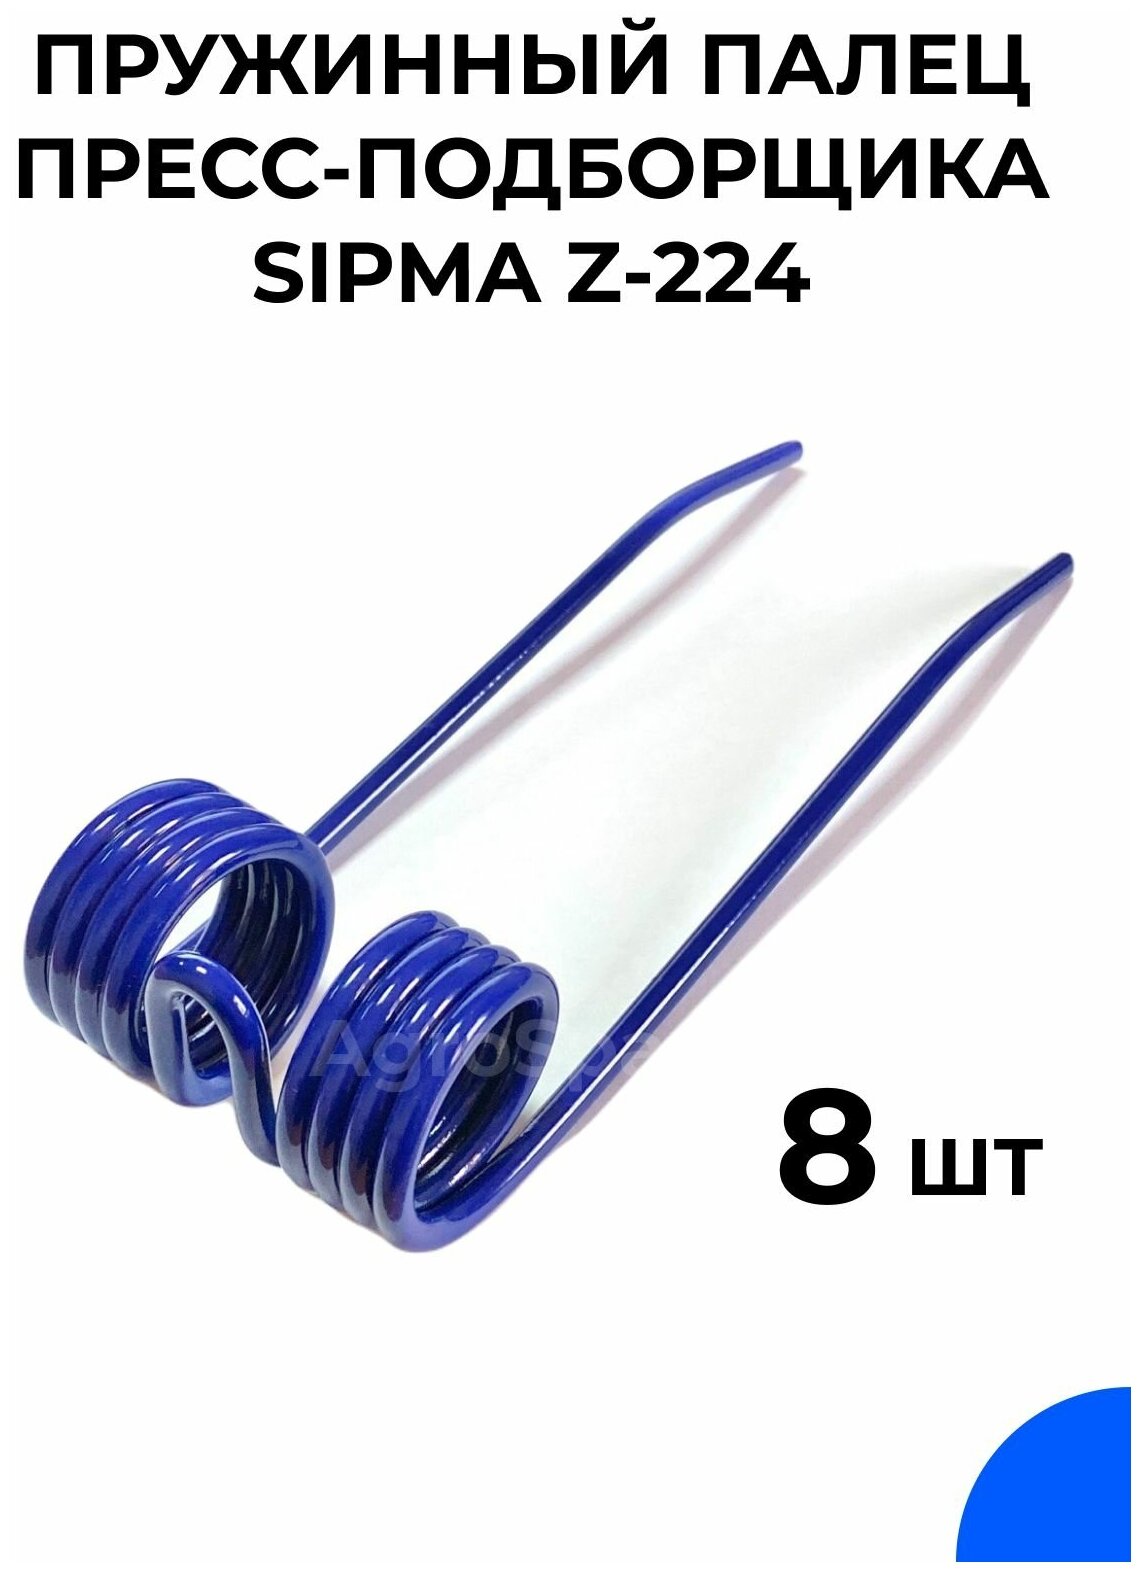 Палец пружинный пресс-подборщика сипма 224 / SIPMA Z-224 / 8 шт.